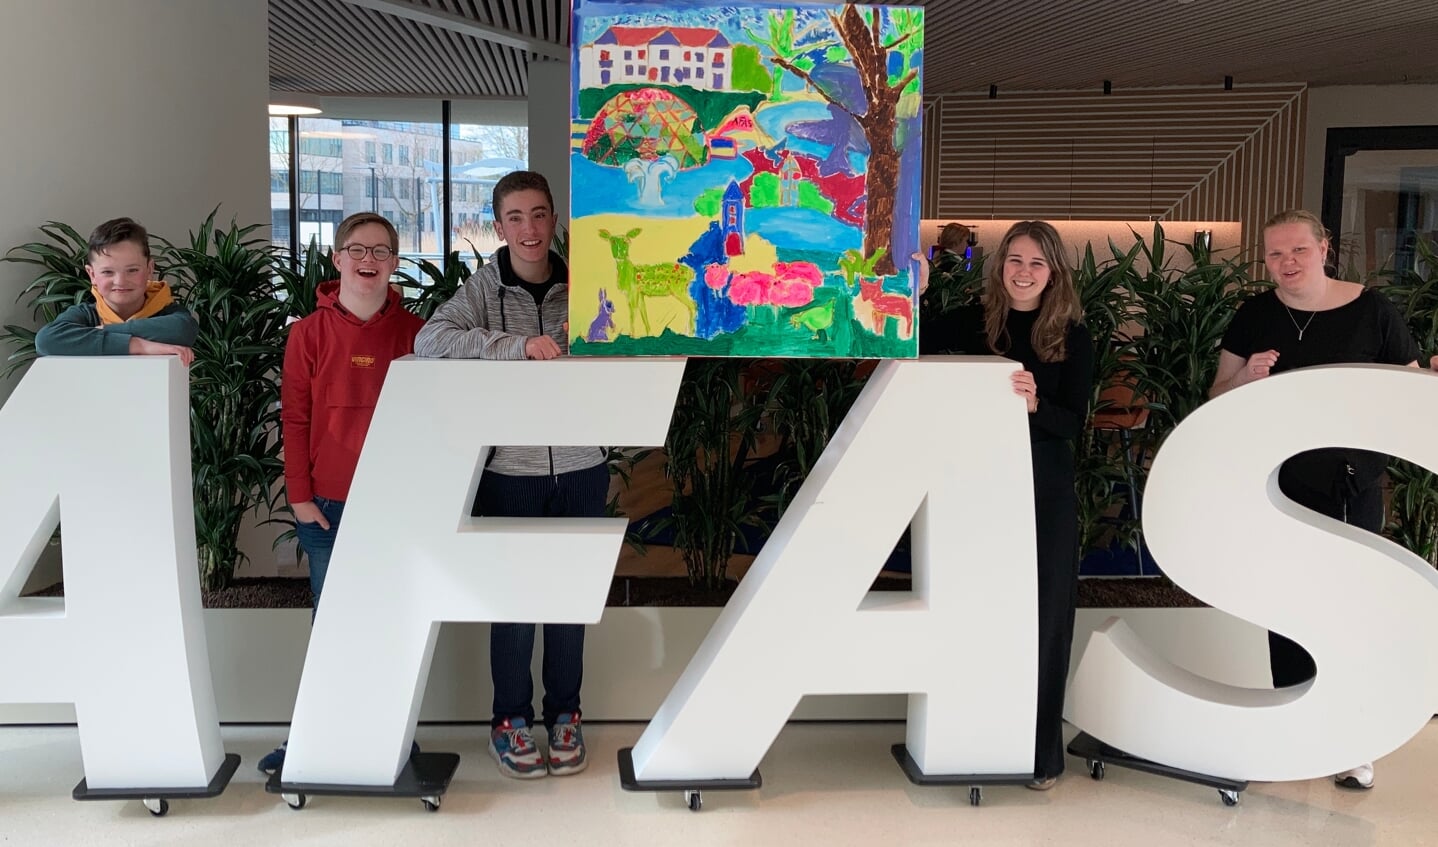 De jongeren van DownTownLeusden overhandigen trots het schilderij ‘Blik op Leusden’ aan koper AFAS. Van links naar rechts: Giel Kraan, Tom van den Tweel, Tijn Kraan, Claire Höfte (AFAS) en Babette Stomphorst. 